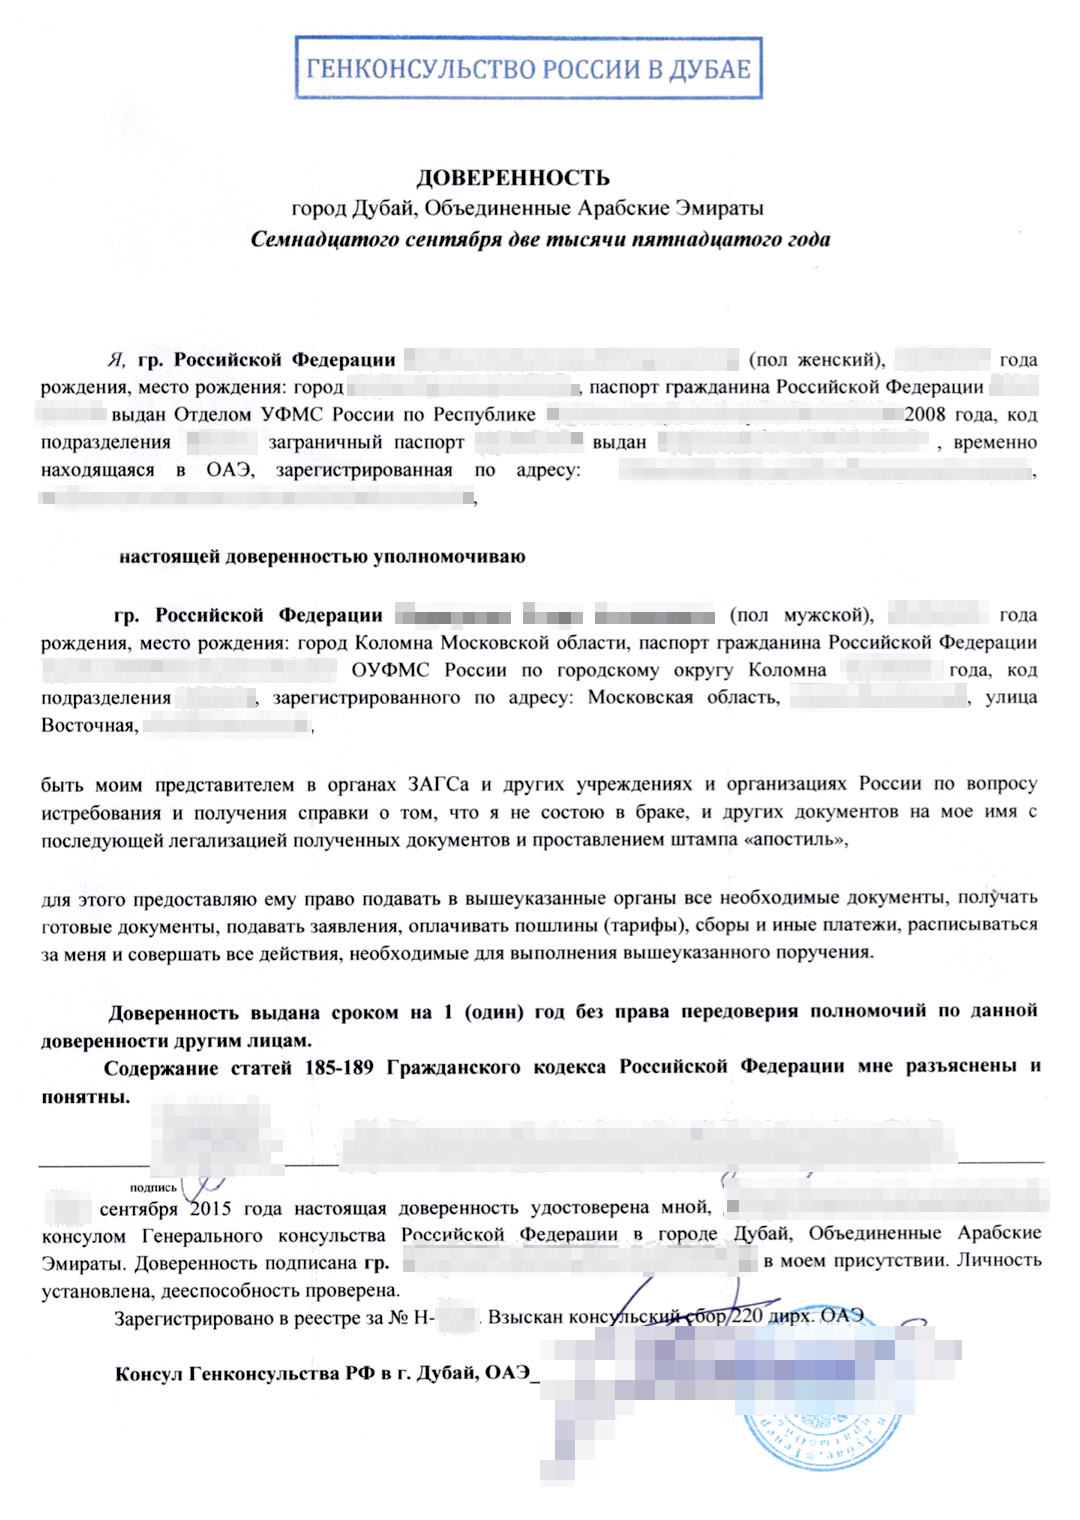 Образец консульской доверенности. Источник: kalmius-info.ru